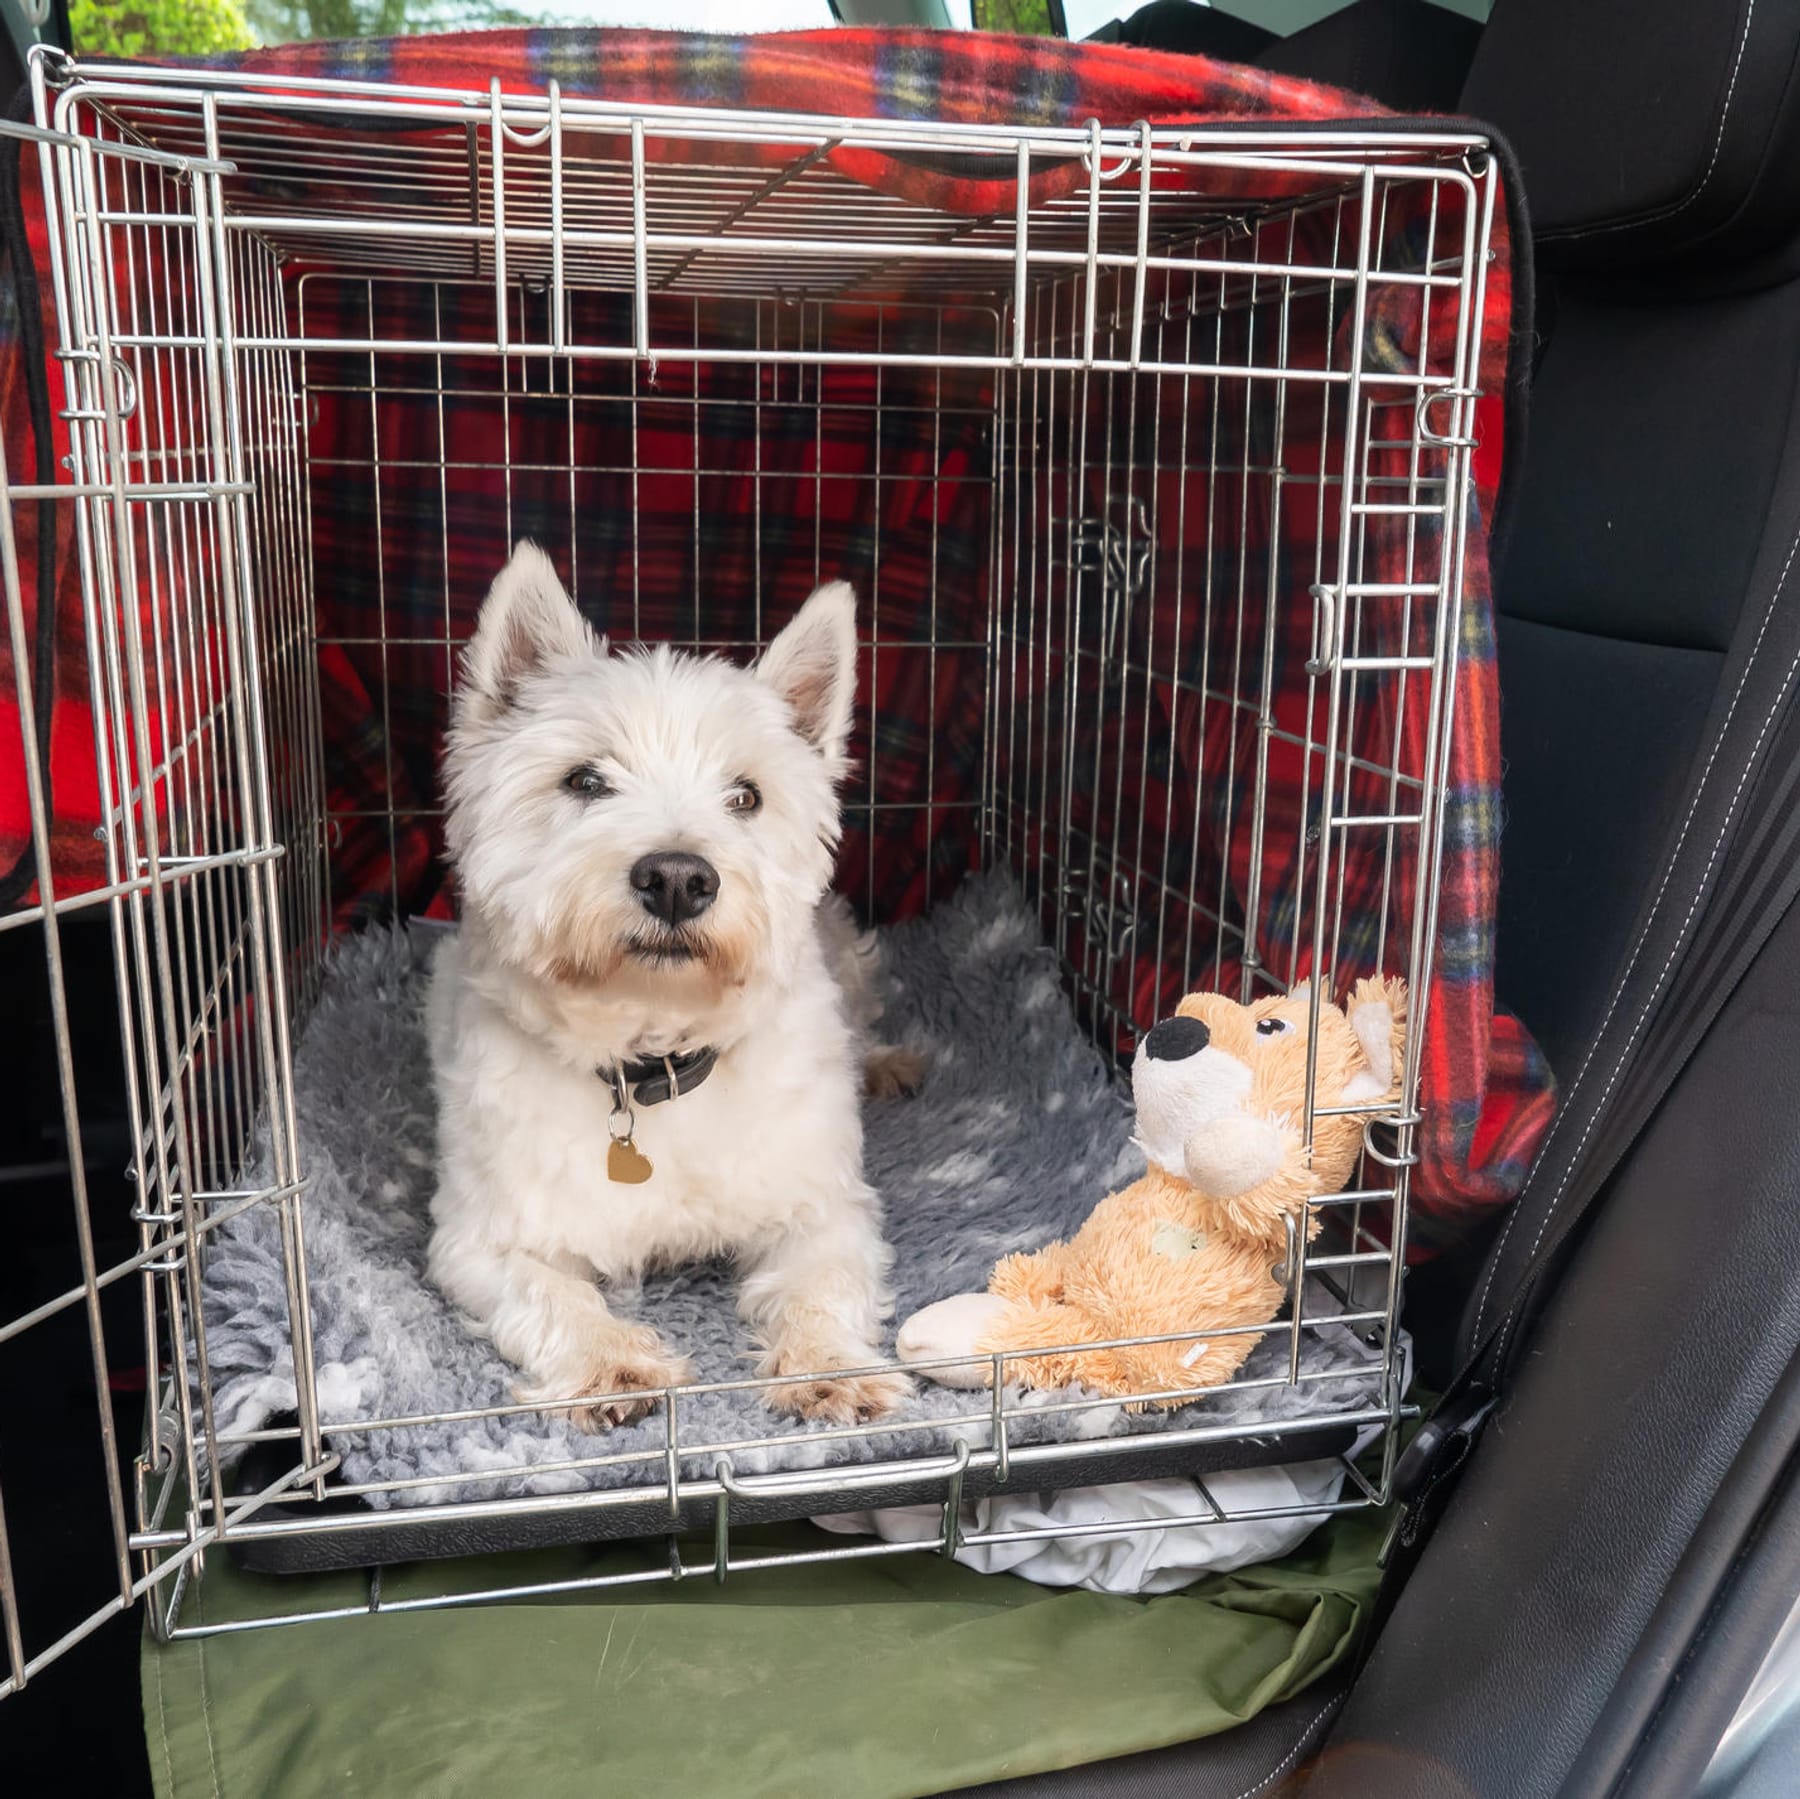 Sicherheitsgurt oder Trennnetz?: So fahren Hunde sicher im Auto